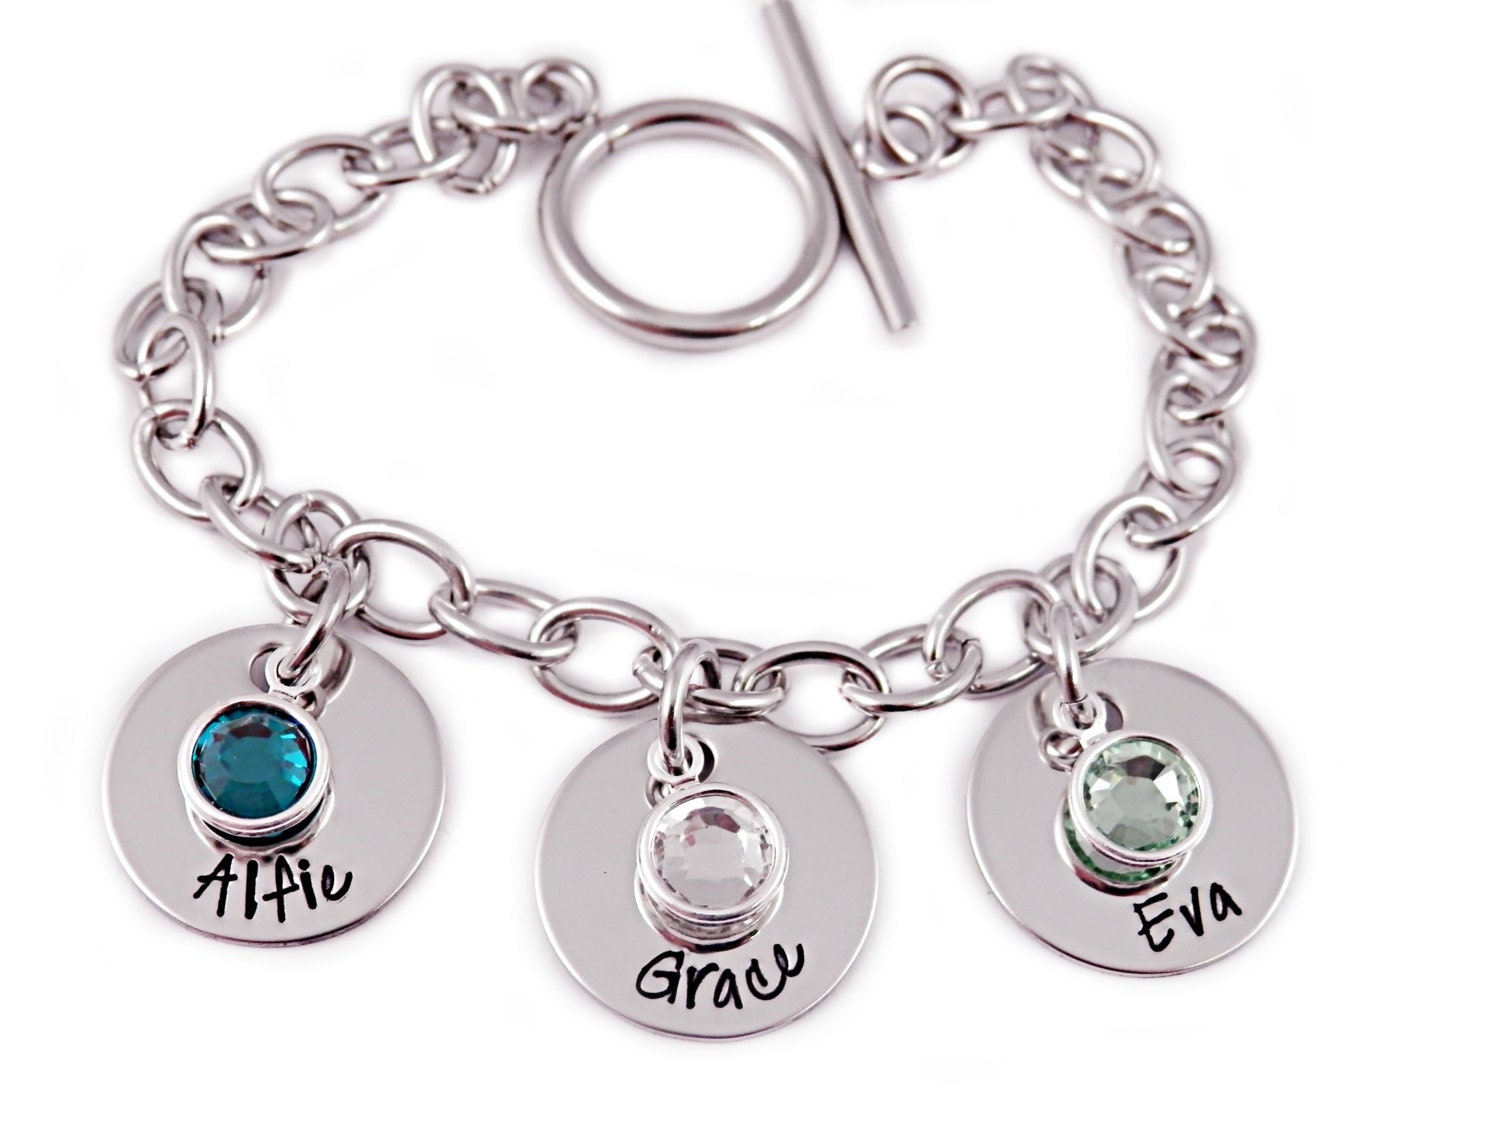 Personalized Charm Bracelet Personalized Jewelry Hand